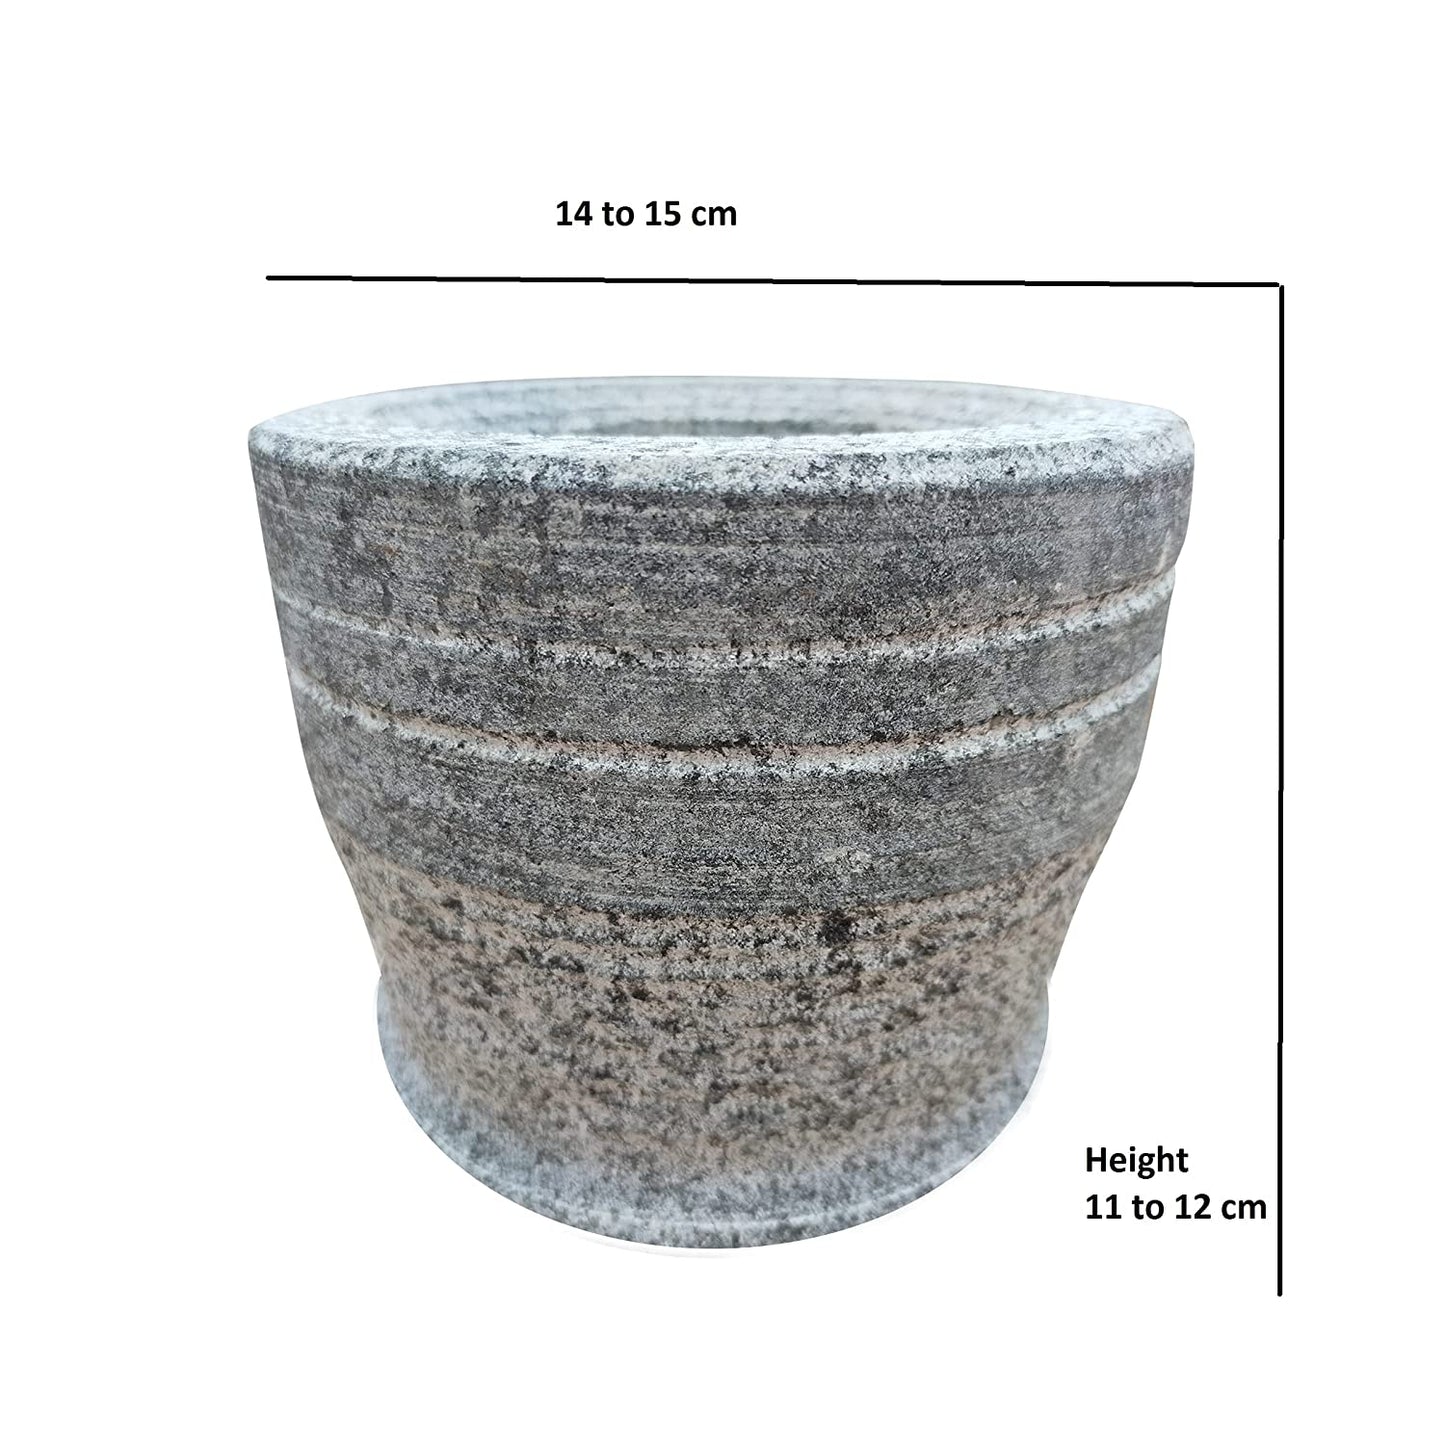 EZAHK Stone Mortar and Pestle Set, Large Size (15 cm) (Grey)